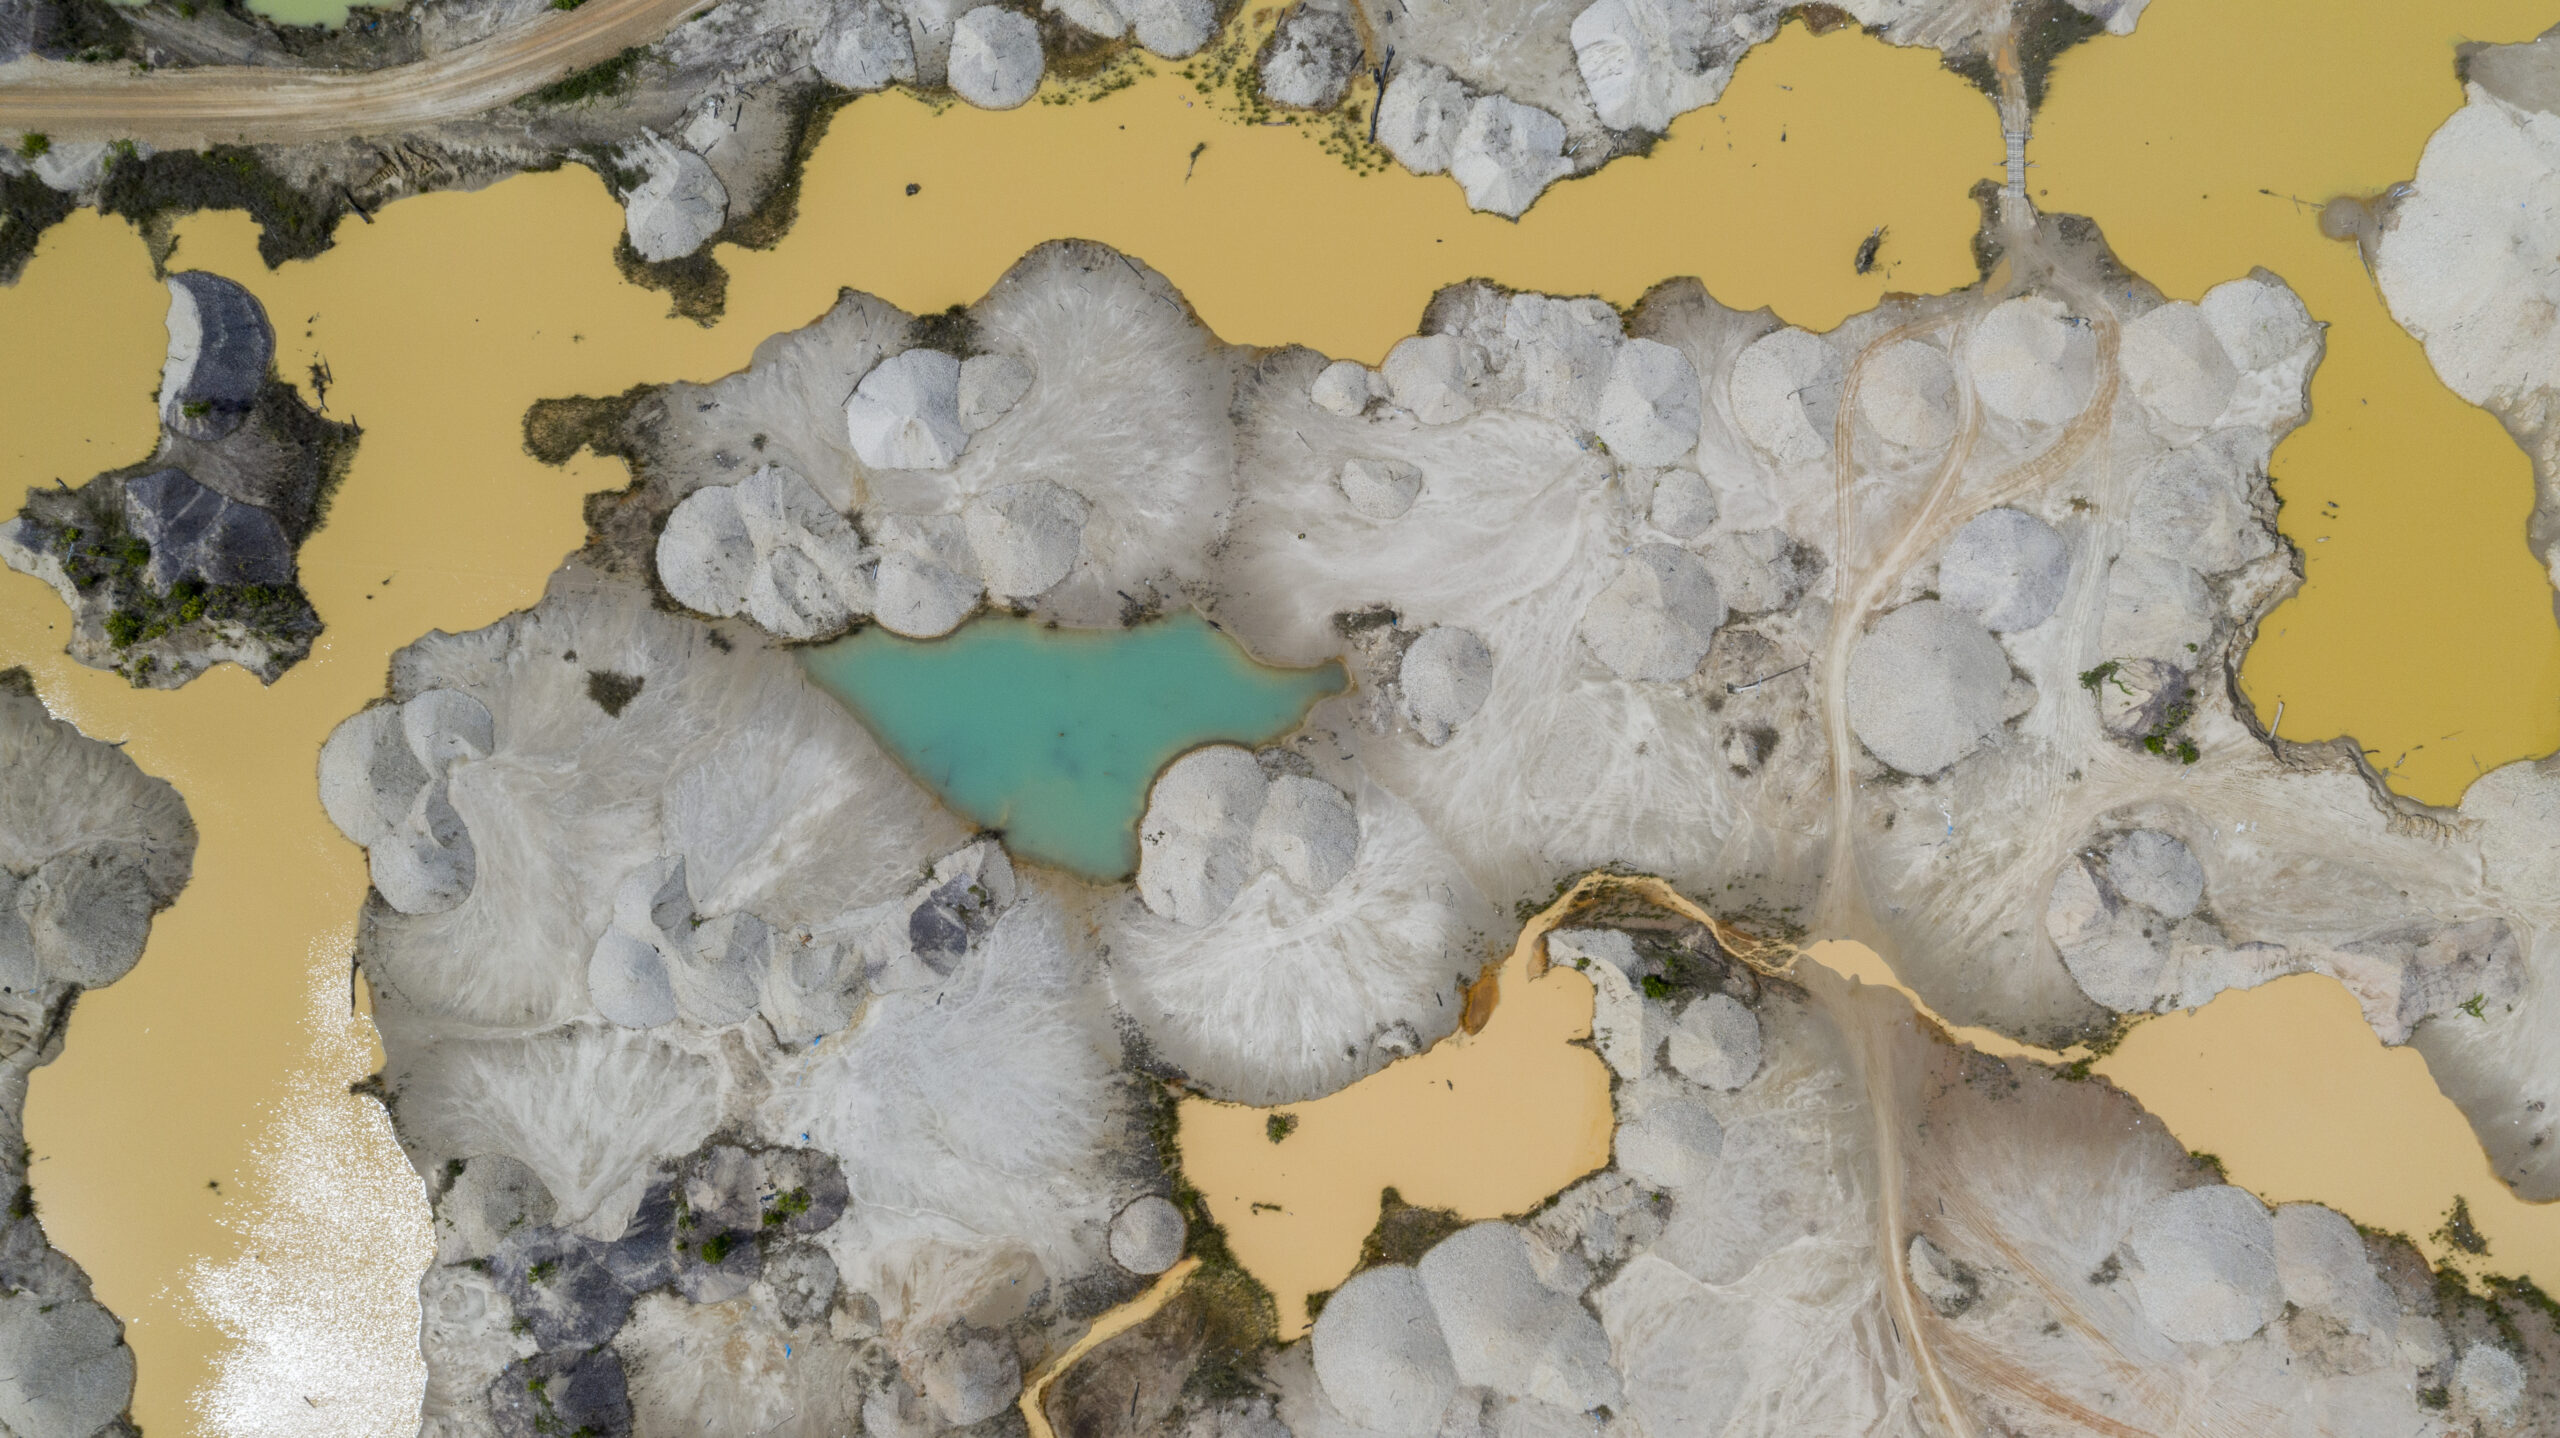 Presencia de cianobacterias (algas verdeazuladas) que producen toxinas que pueden enfermar a las personas y los animales, a pocos kilómetros de Delta 1, en la reserva comunal Amarakaeri, Madre de Dios, Perú. Foto: Alejandro Saldívar